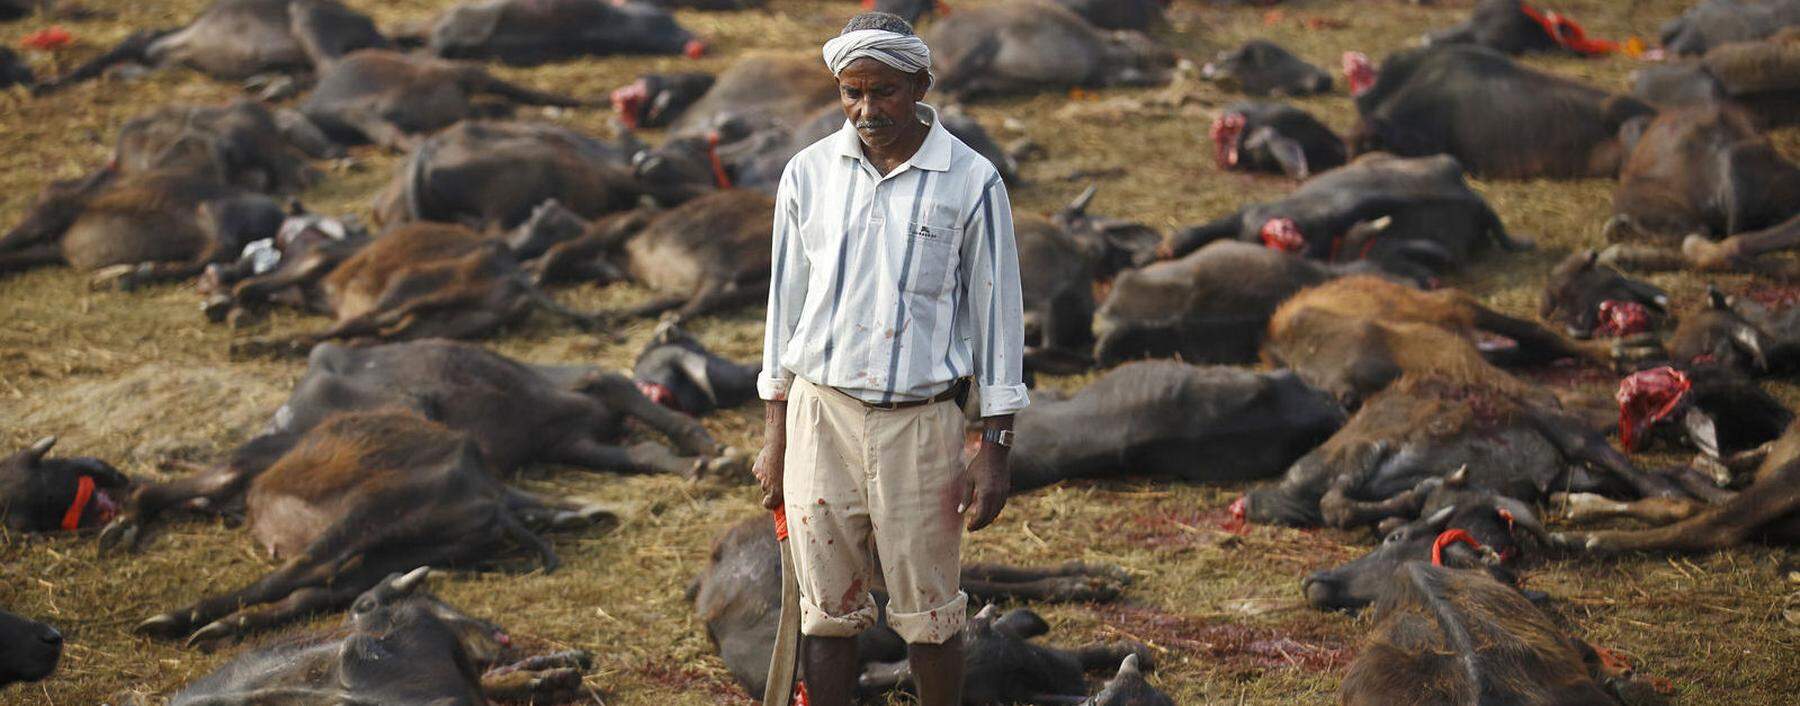 Nicht immer liefert die Fleischindustrie die grausamsten Bilder. Alle fünf Jahre werden in Nepal hunderttausende Tiere zu Ehren der Göttin Gadhimai geopfert. 